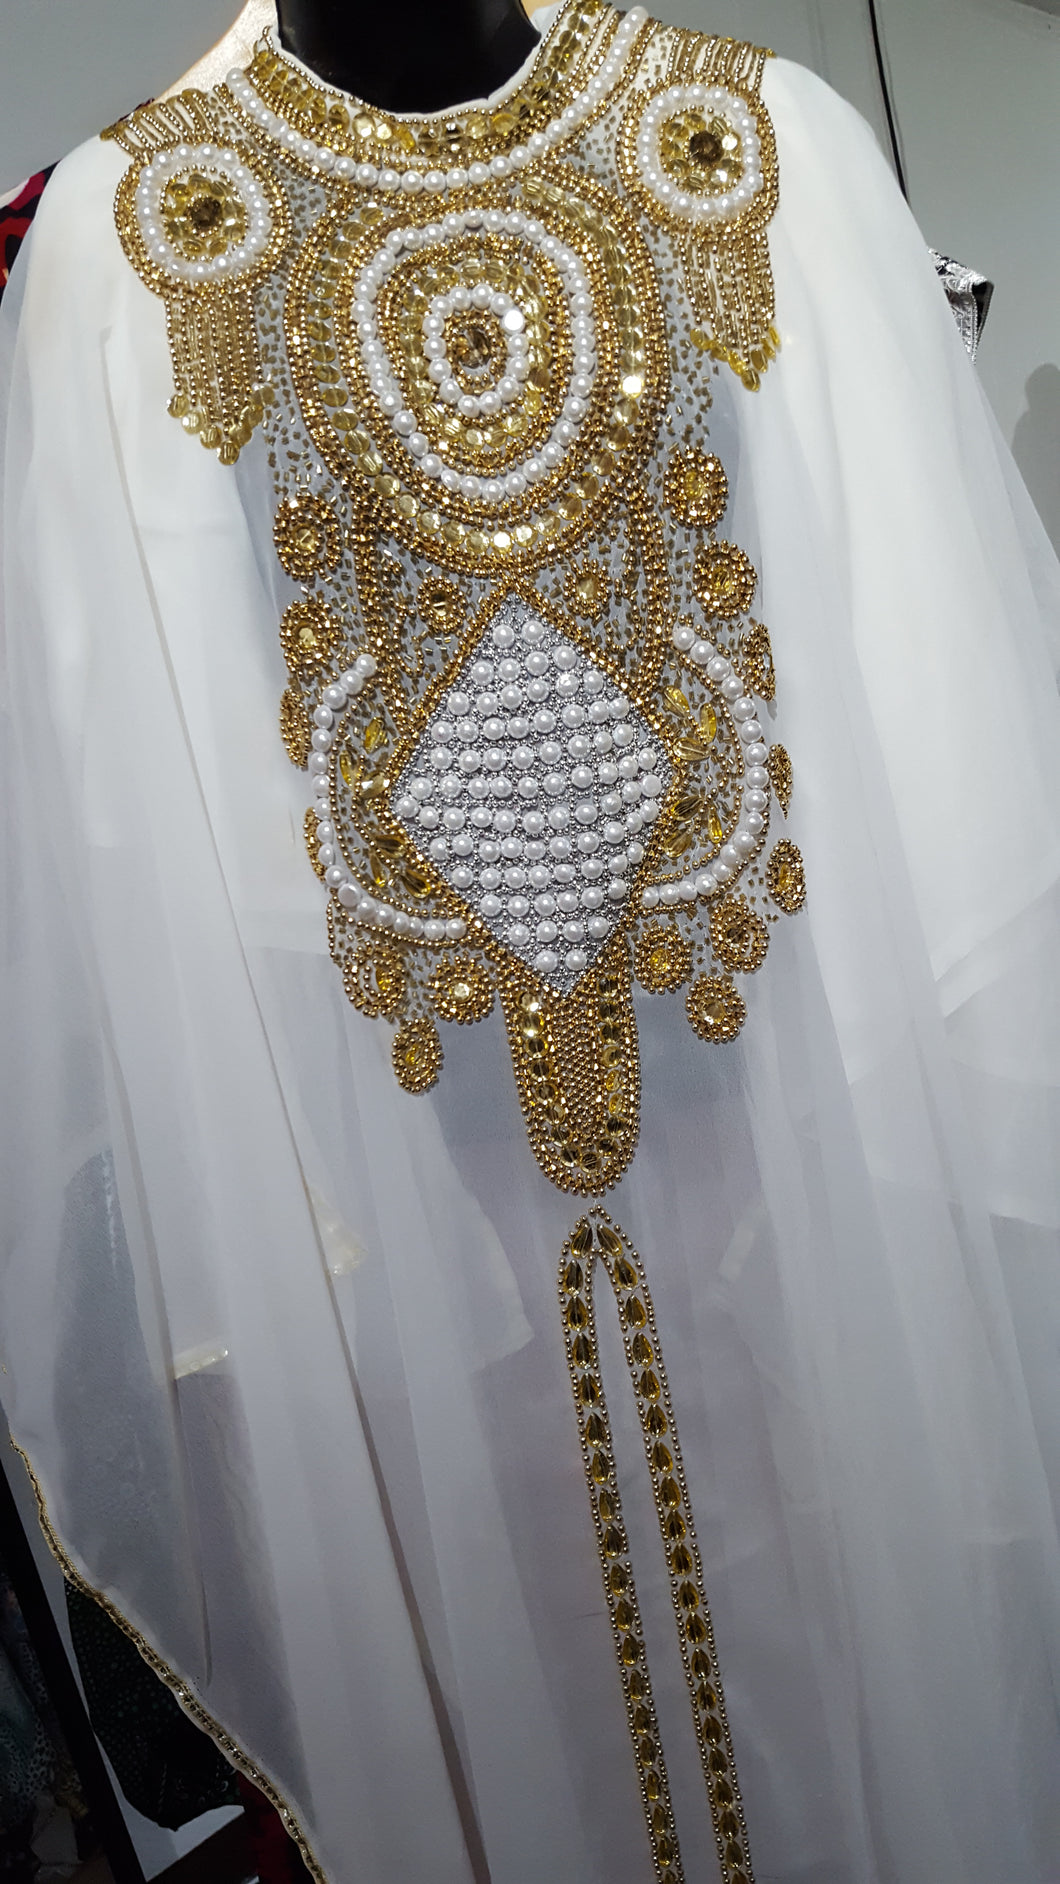 Regal Jeweled Kaftan